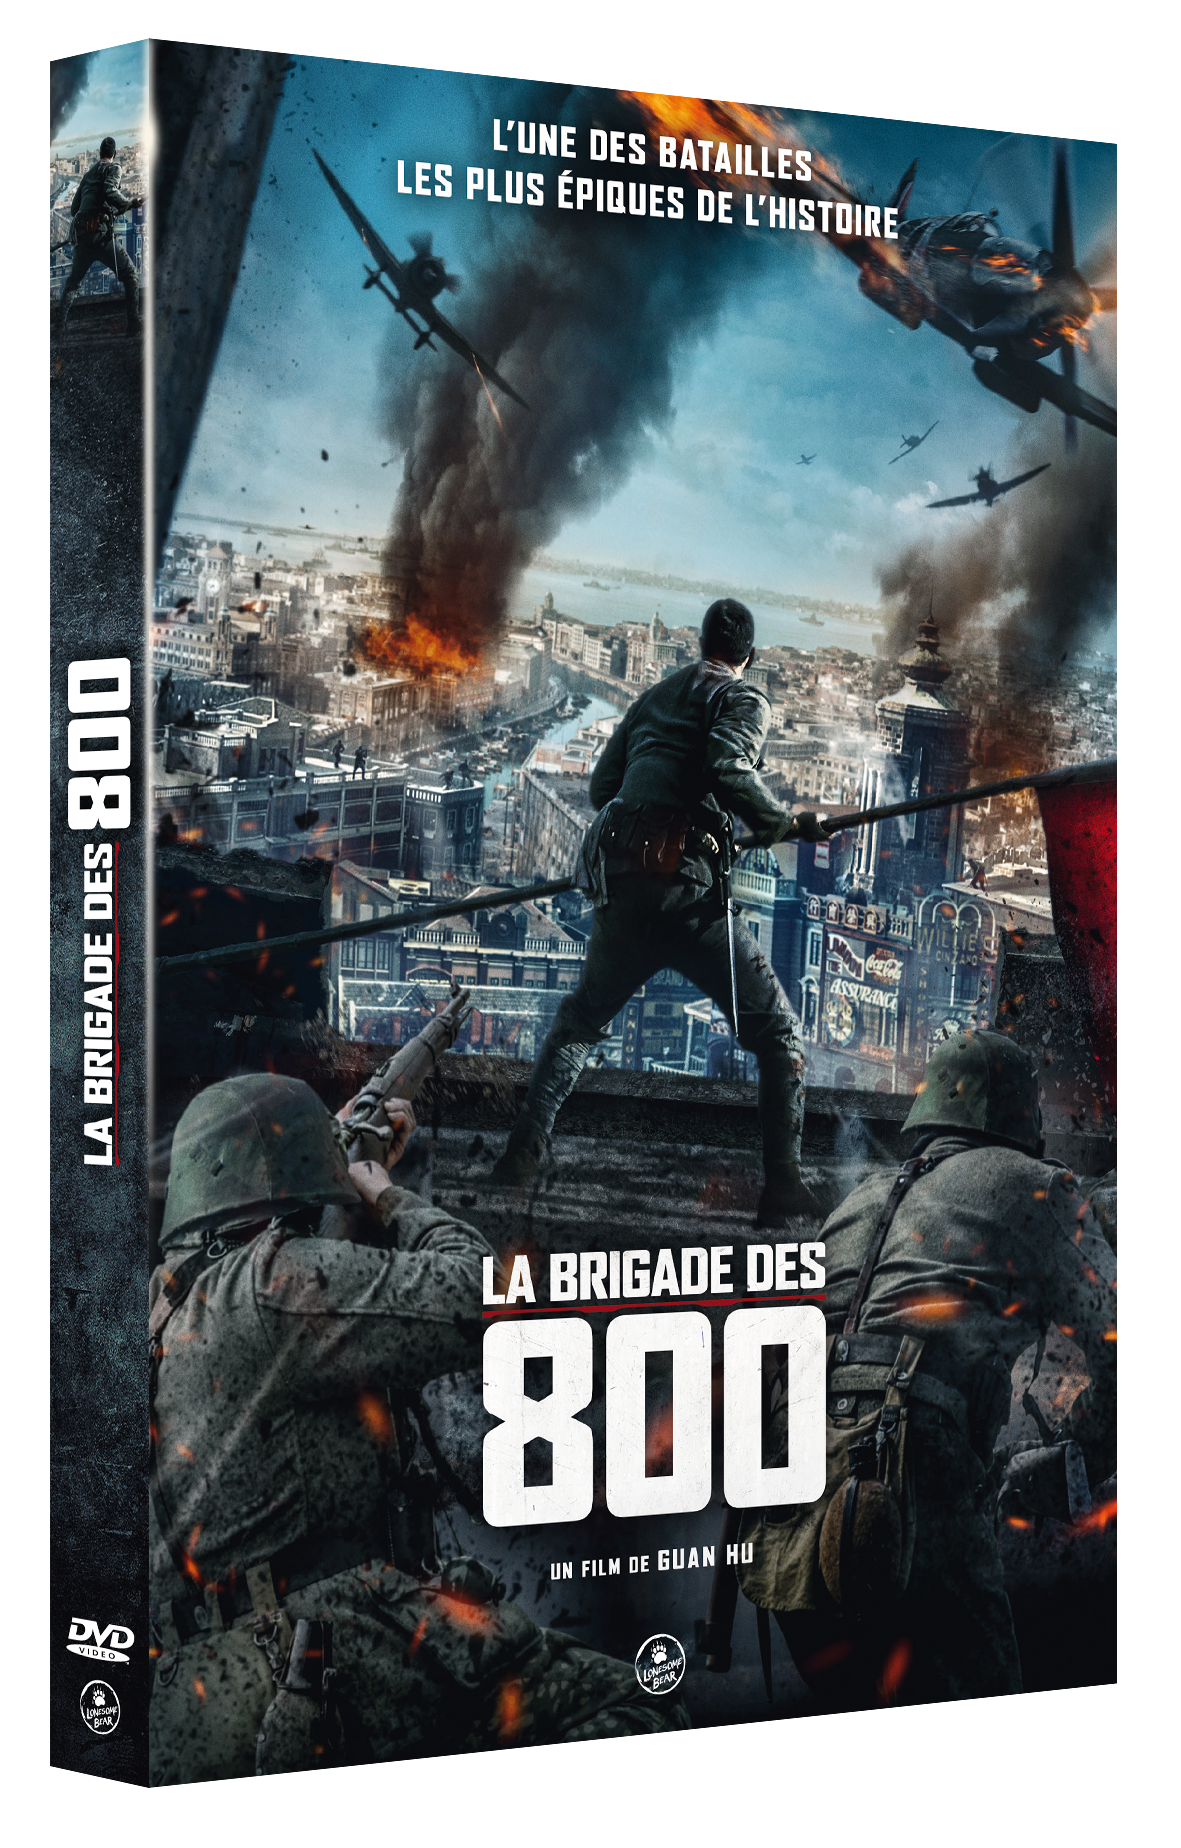 DVD "La Brigade des 800"